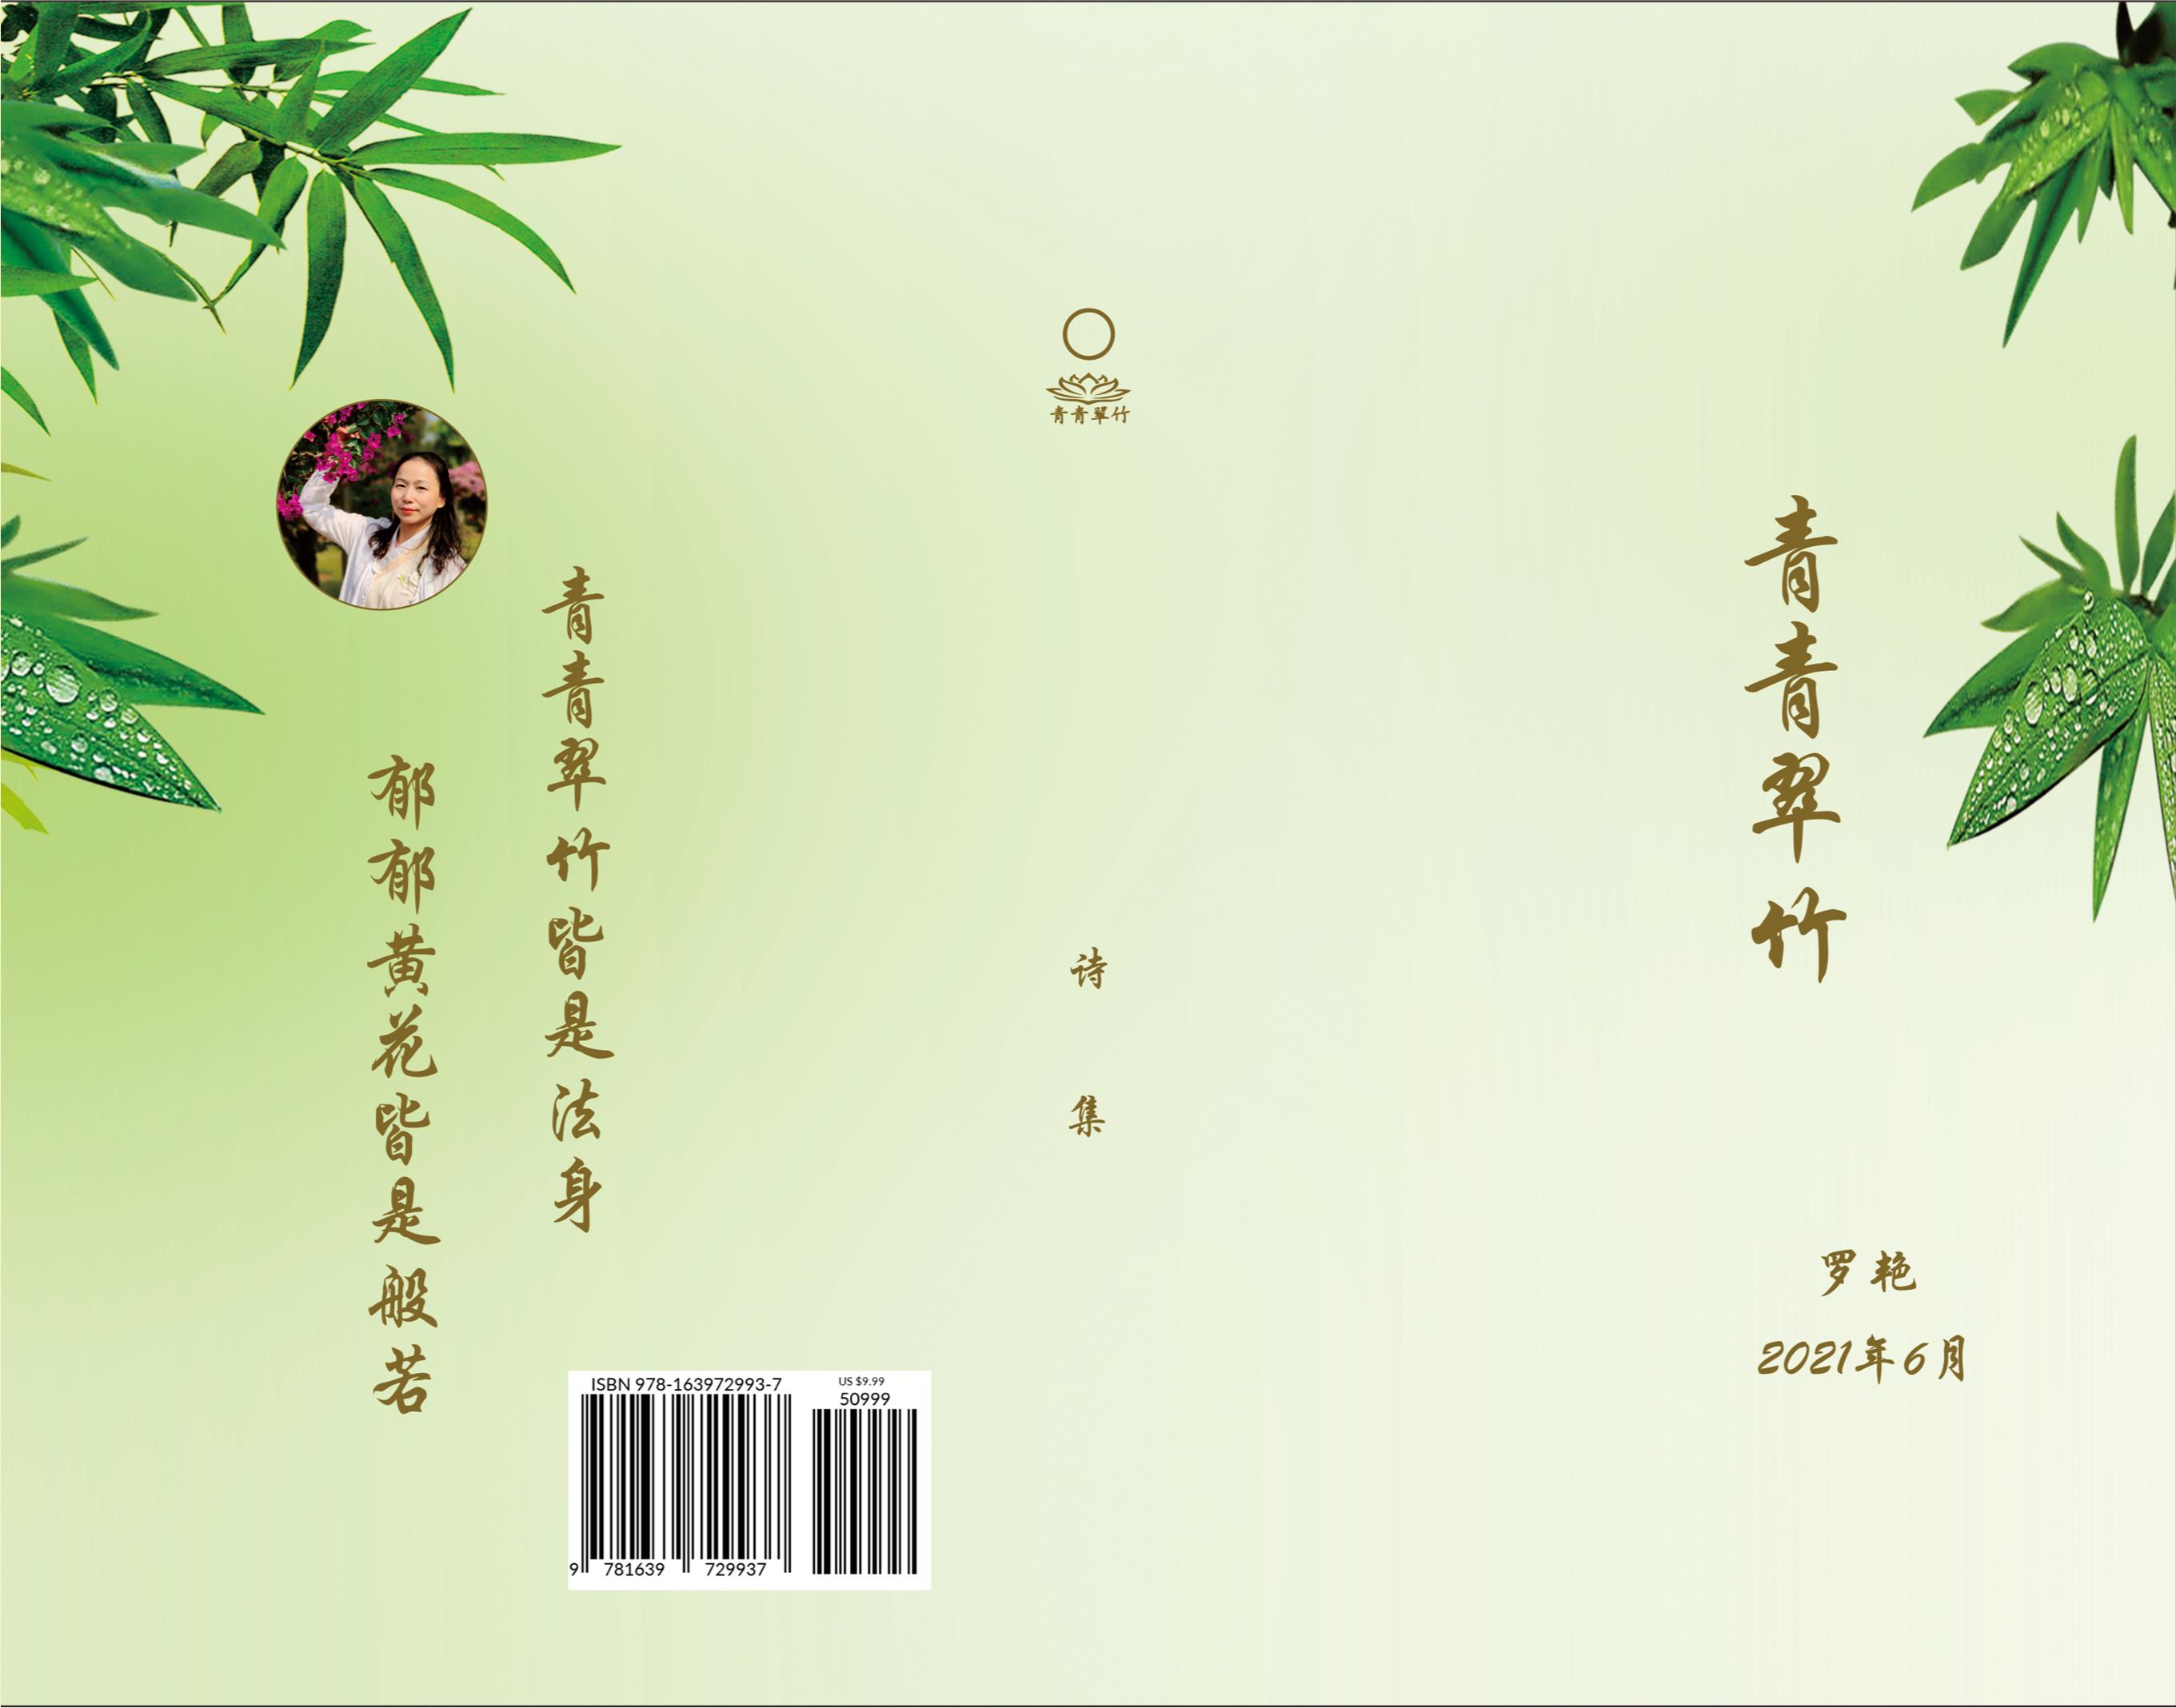 青青翠竹 cover image